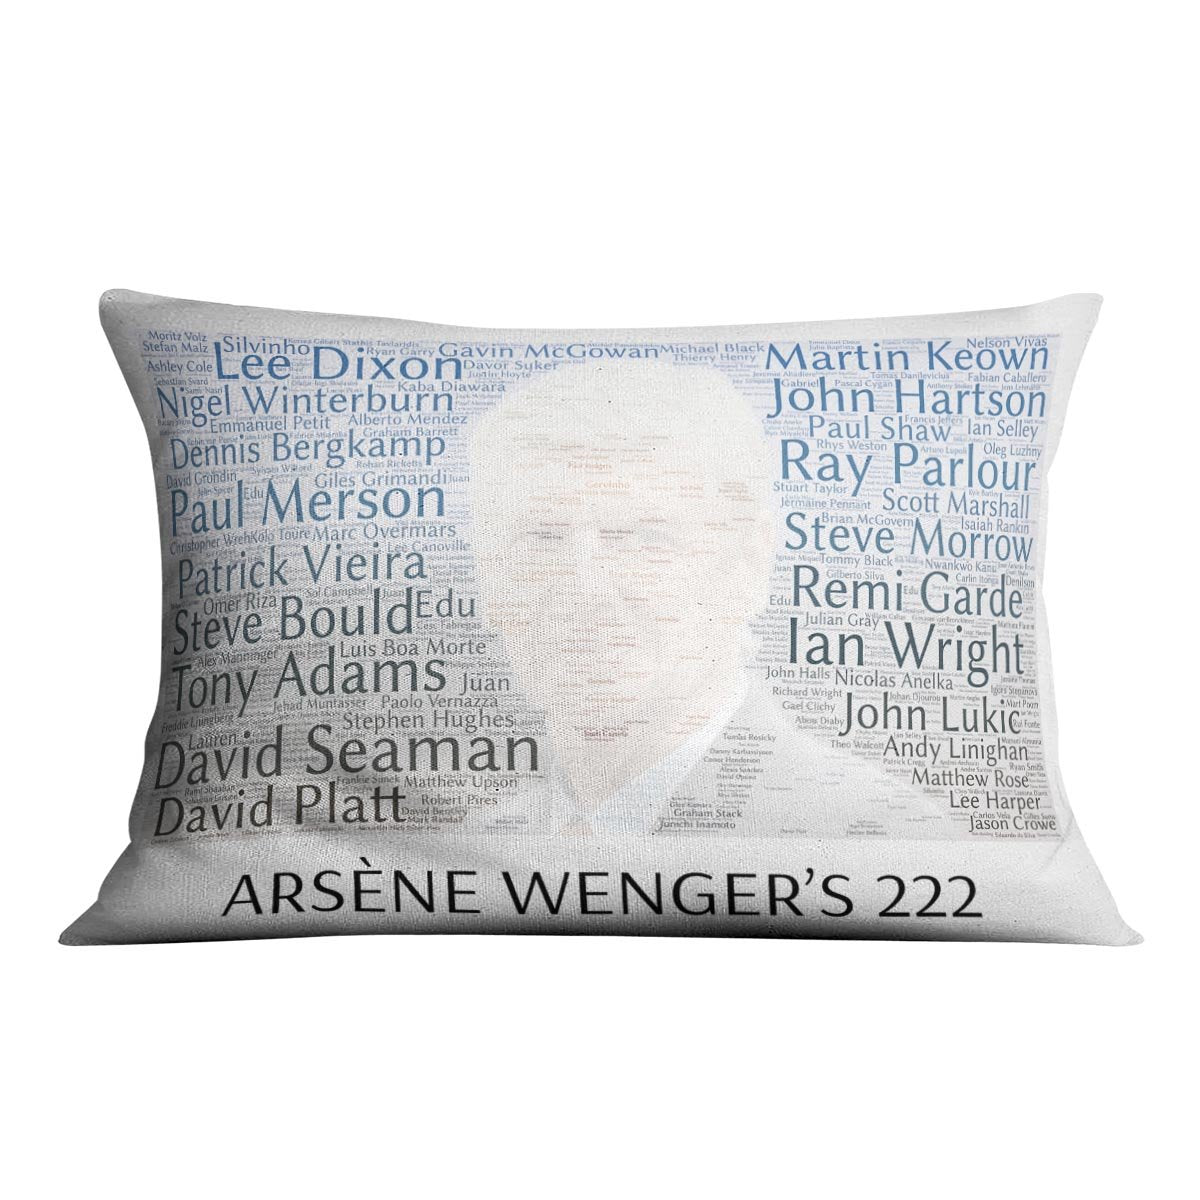 Arsene Wengers 222 Players Cushion